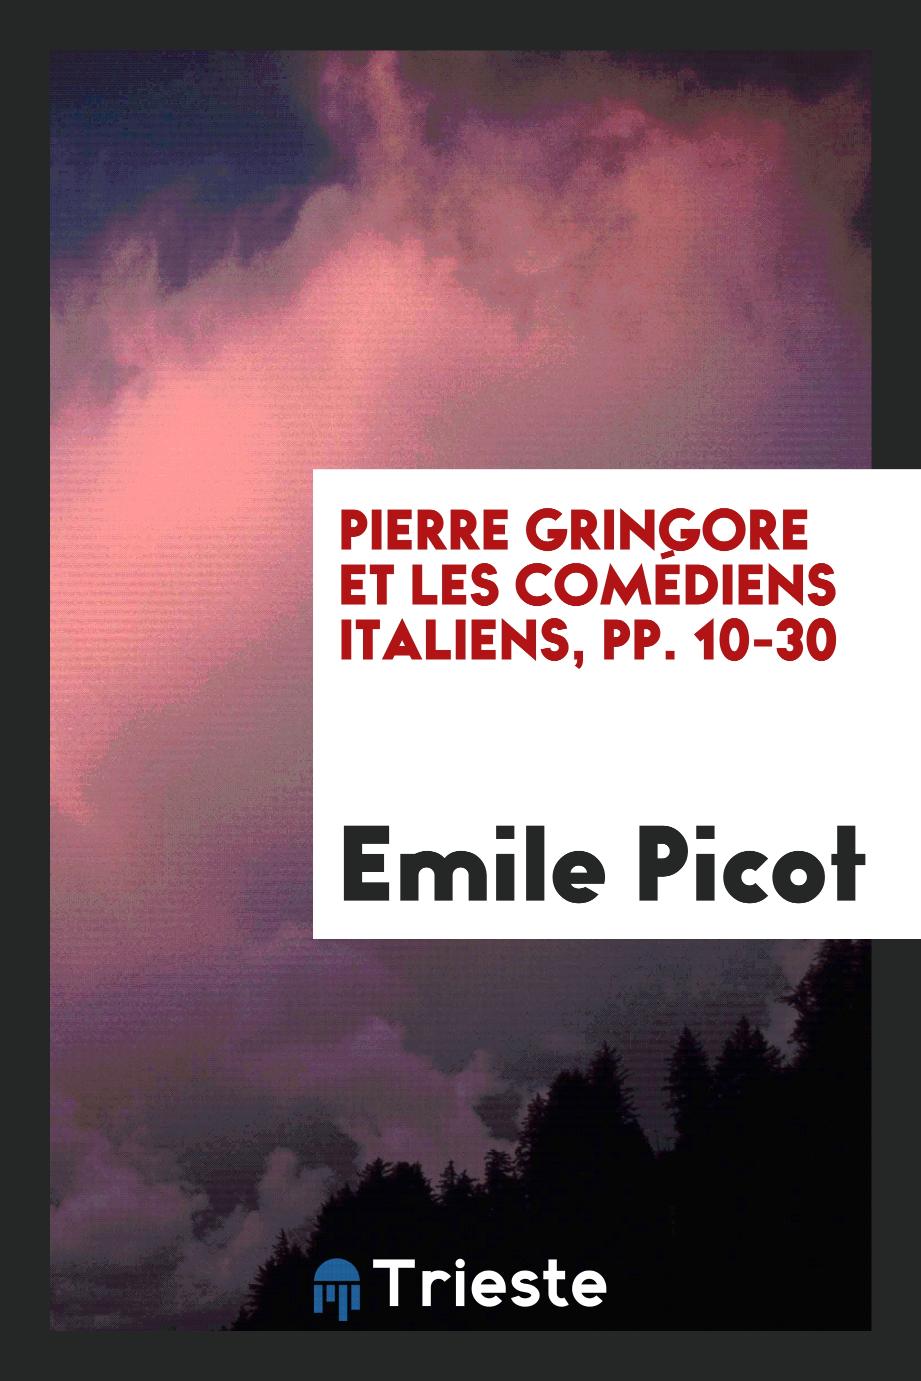 Pierre Gringore et les comédiens italiens, pp. 10-30